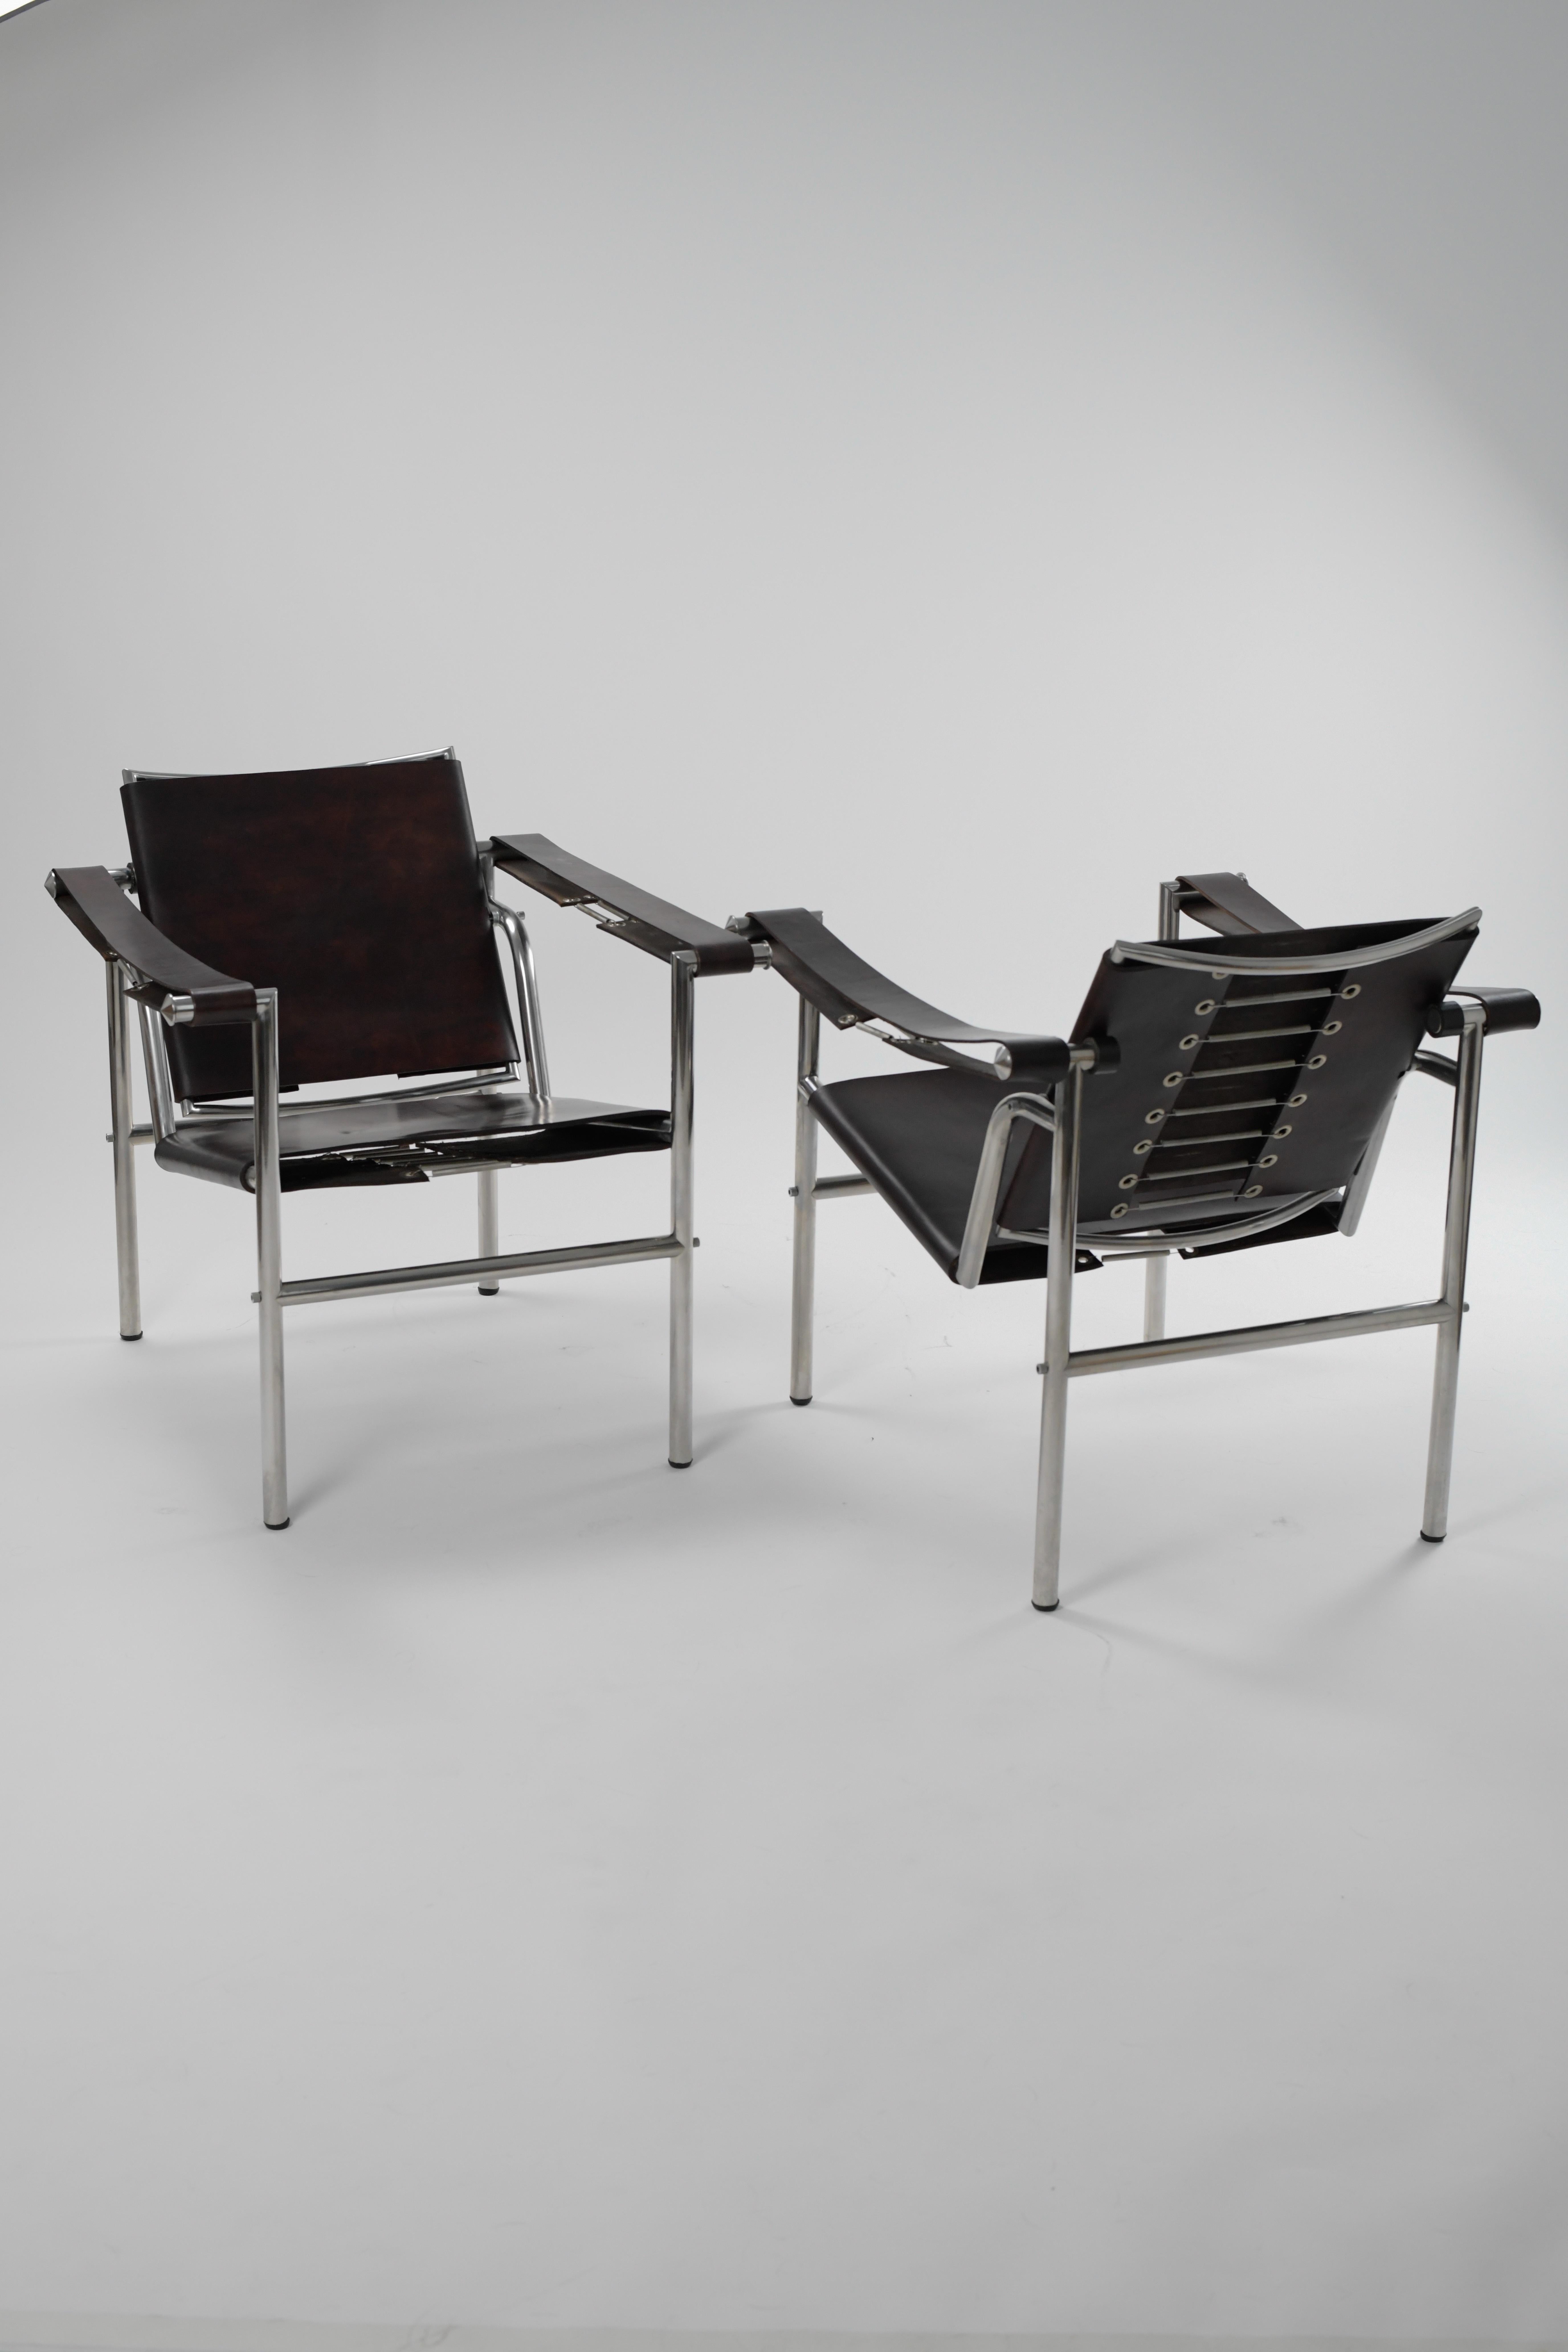 Superbe paire de fauteuils LC1 de Charlotte Perriand, Pierre Jeanneret et Le Corbusier fabriqués par Treitel Gratz. 

Ils sont en très bon état et ne présentent que de très légères traces d'utilisation. Prêt à être placé. 